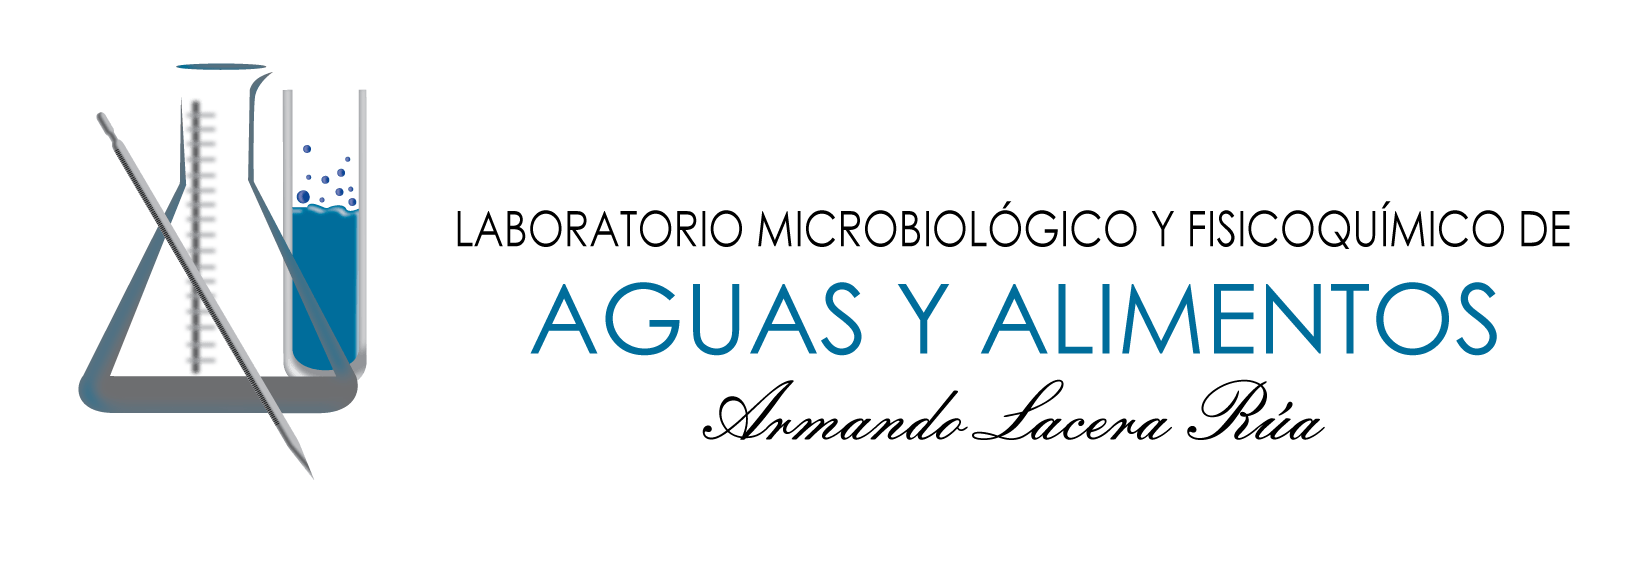 Laboratorio Microbiológico y Fisicoquímico de Aguas y Alimentos “Armando Lacera Rúa” logo